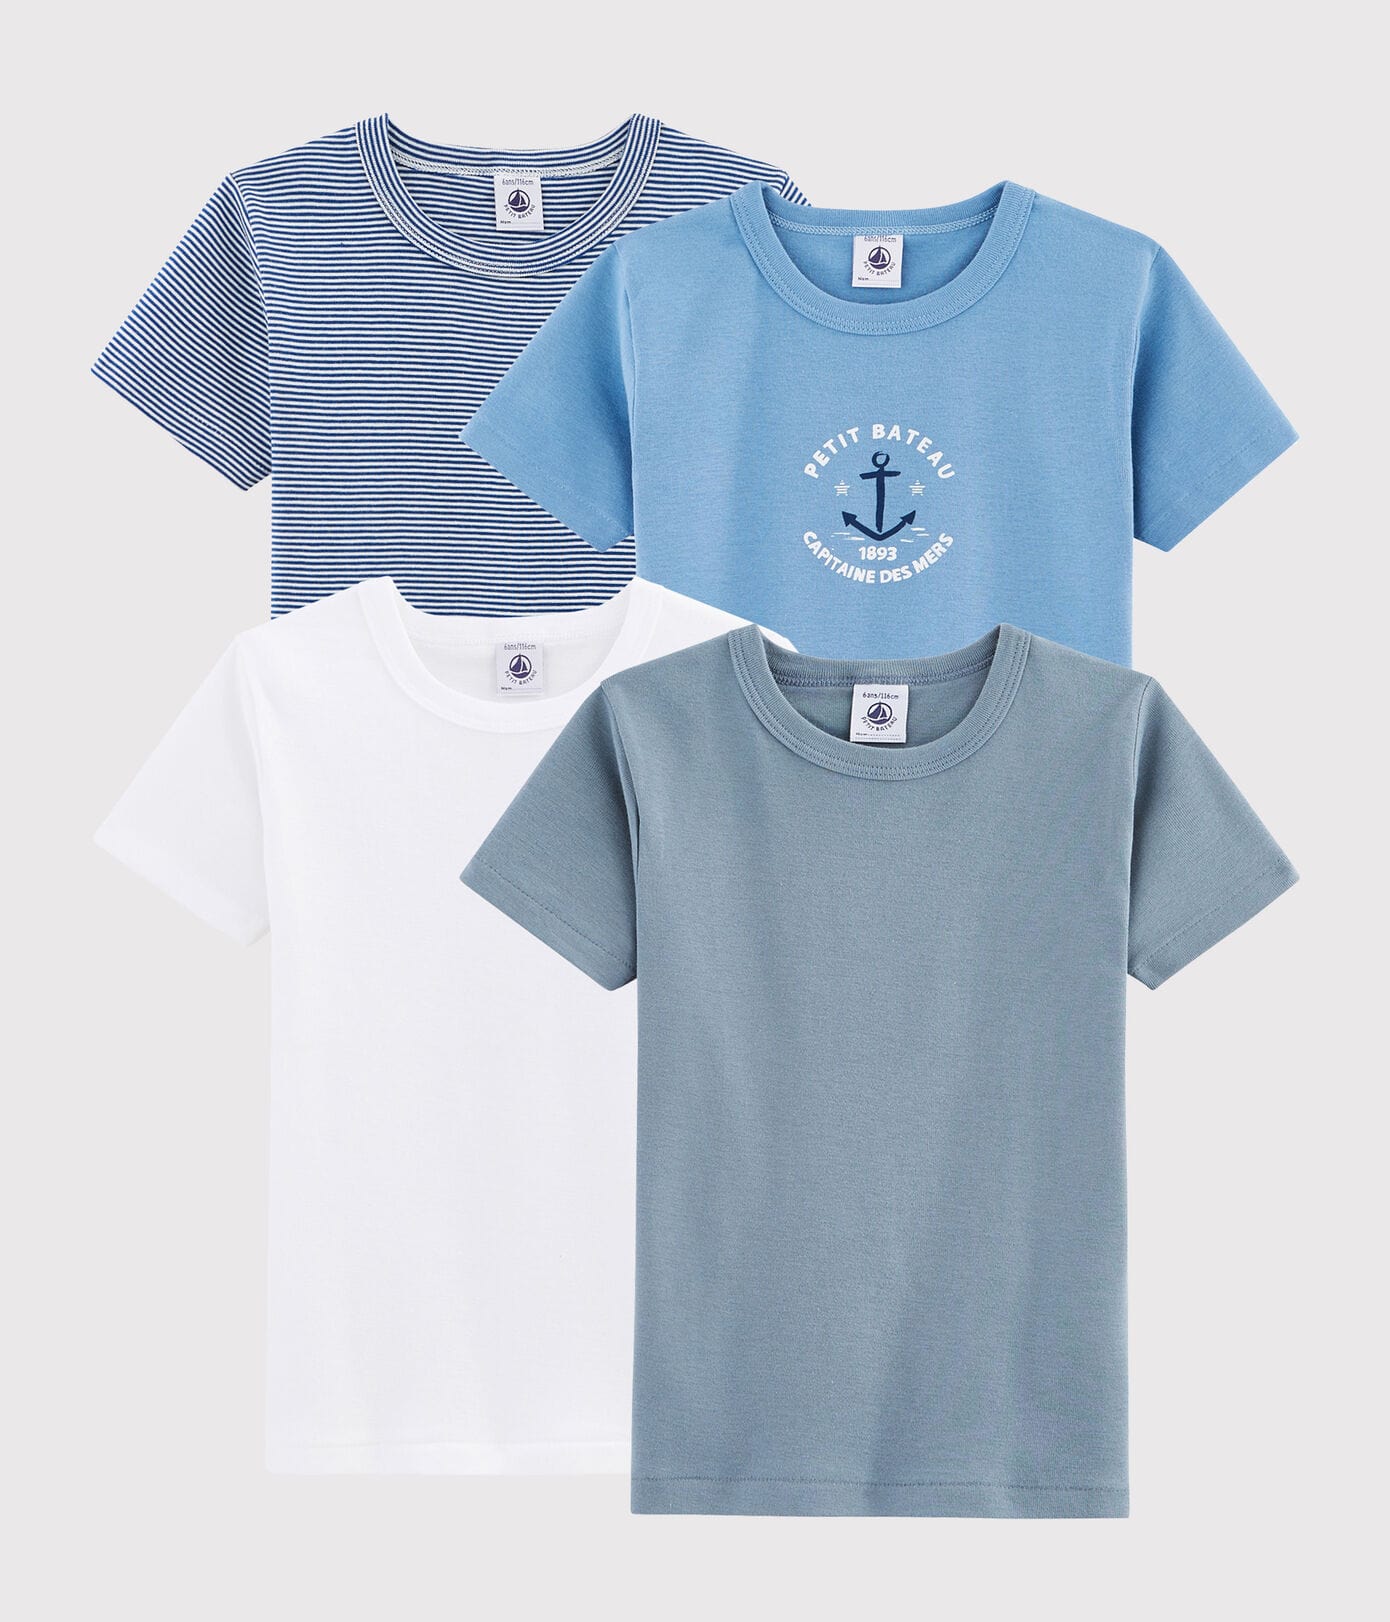 Lot de 5 t-shirts manches courtes brique + bleu marine + écru + bleu + kaki  La Redoute Collections